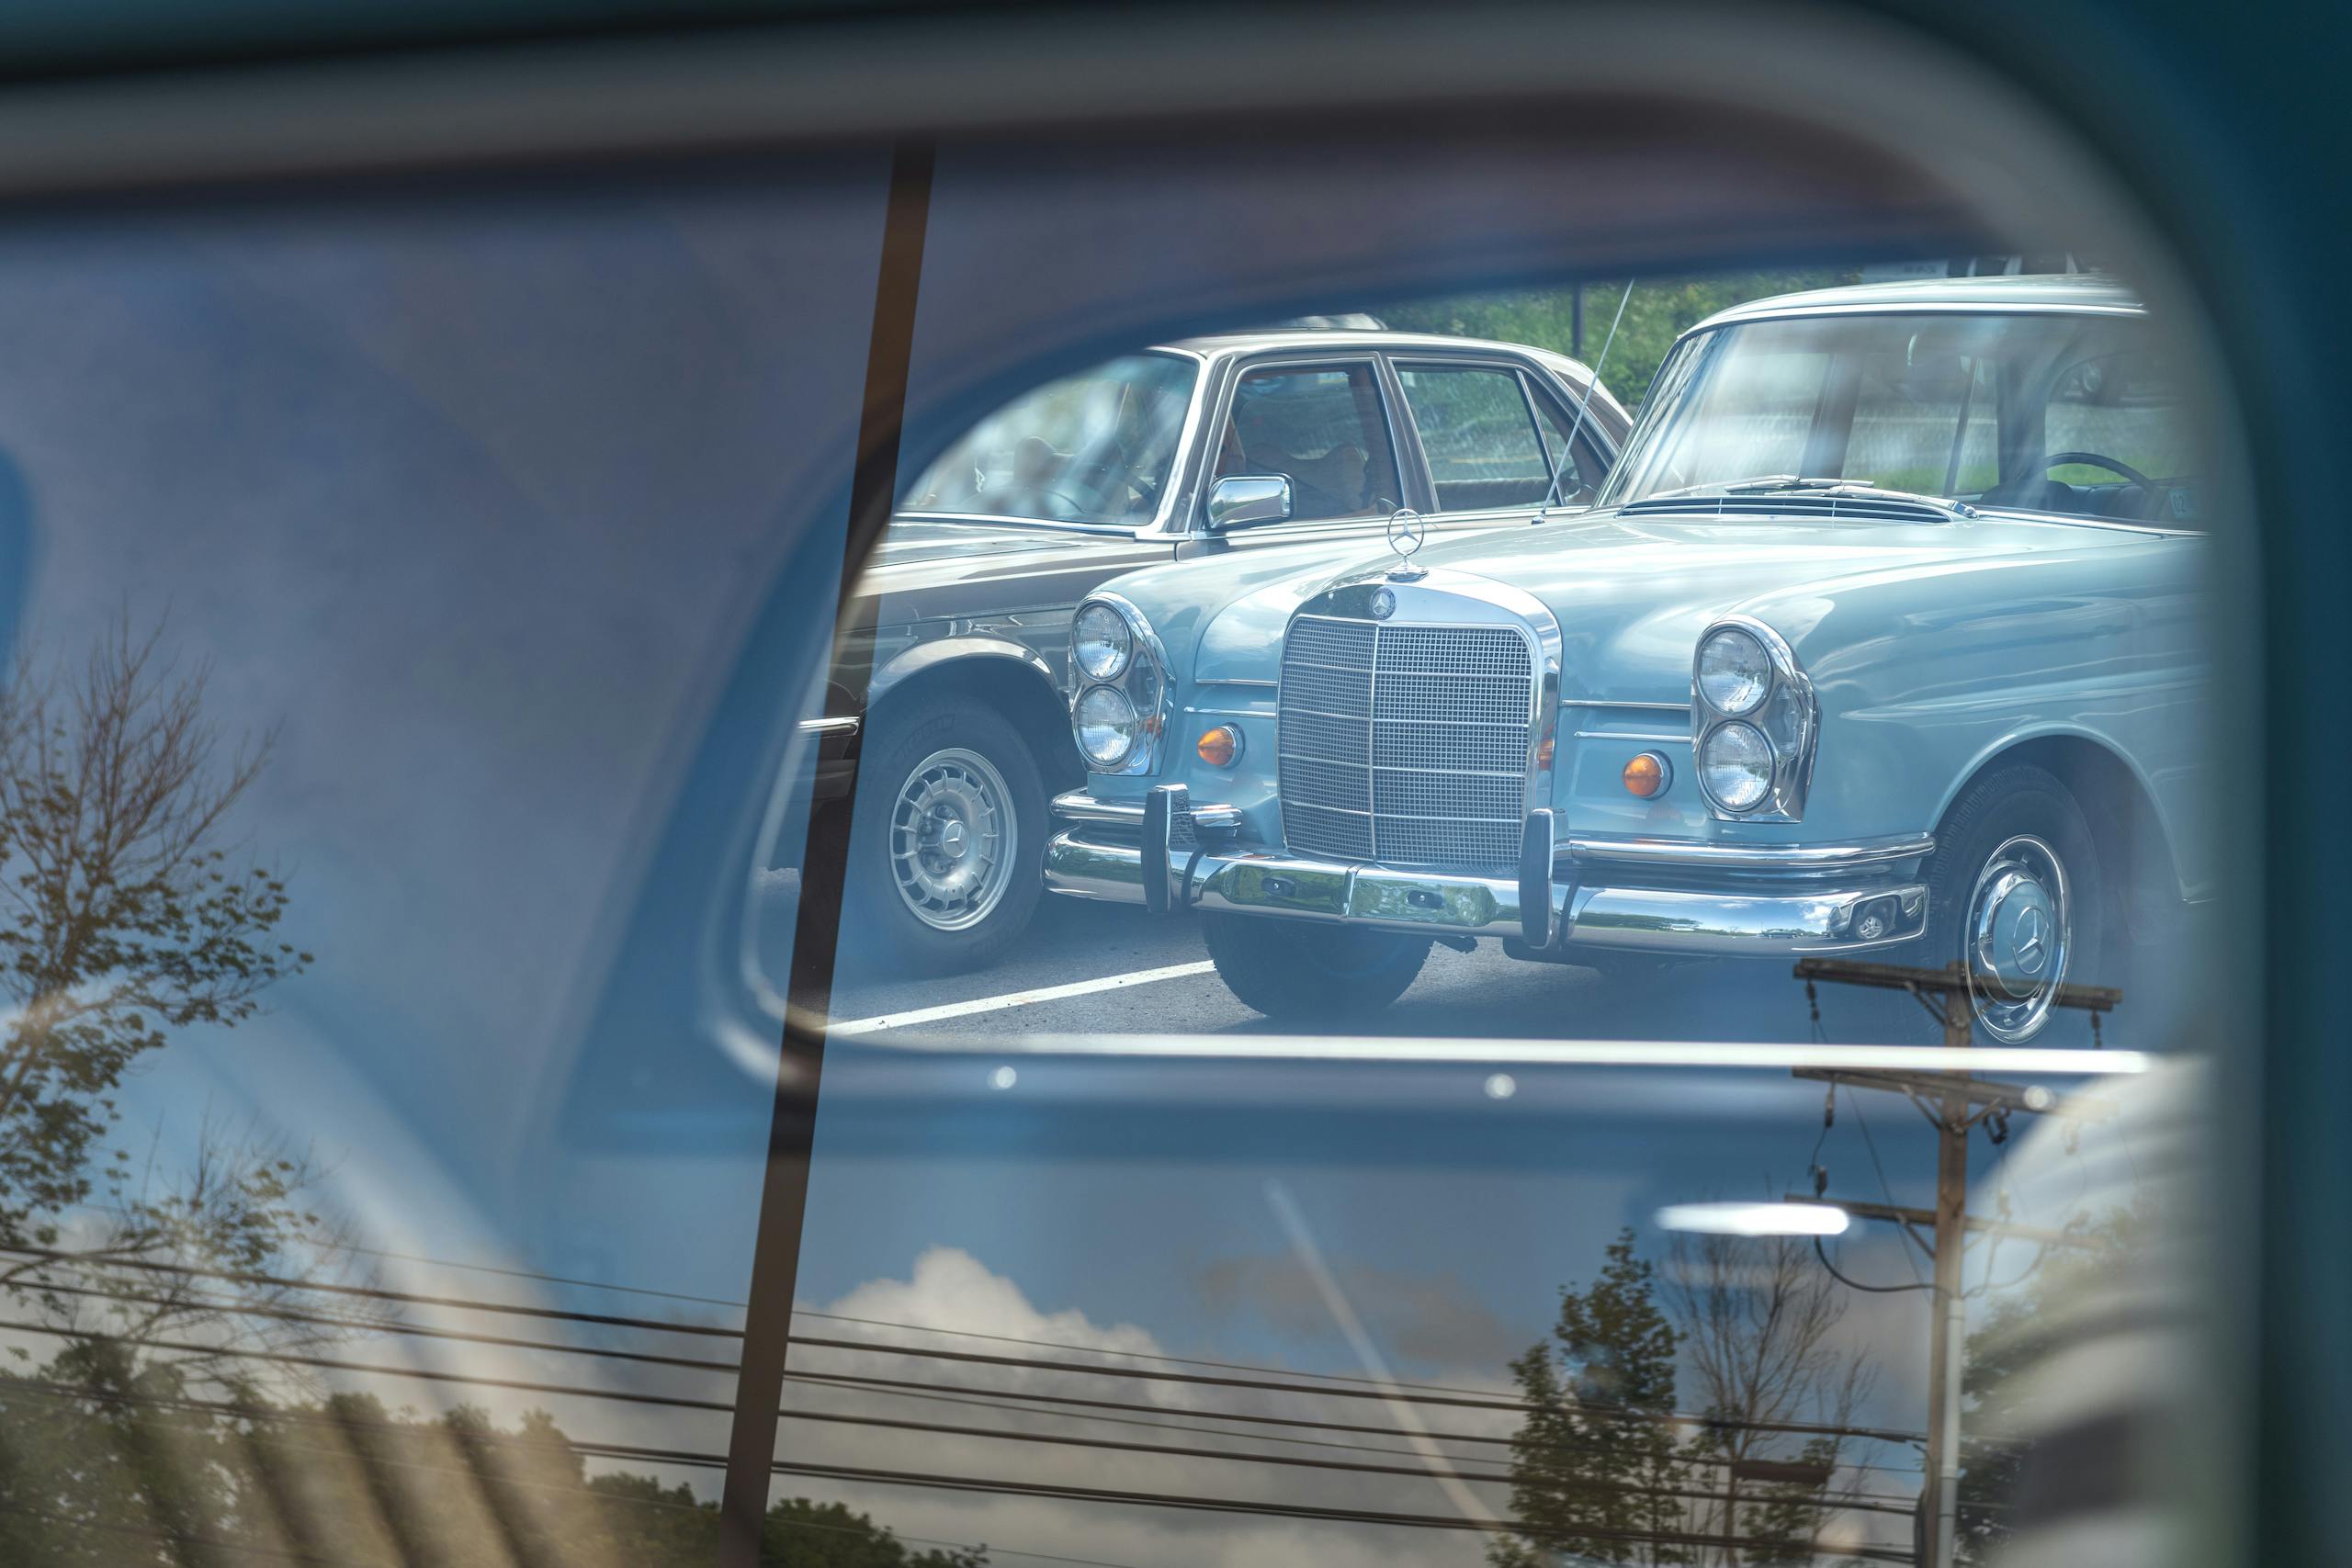 Jaime Kopchinski Mercedes Benz Expert Shop parking lot car through glass